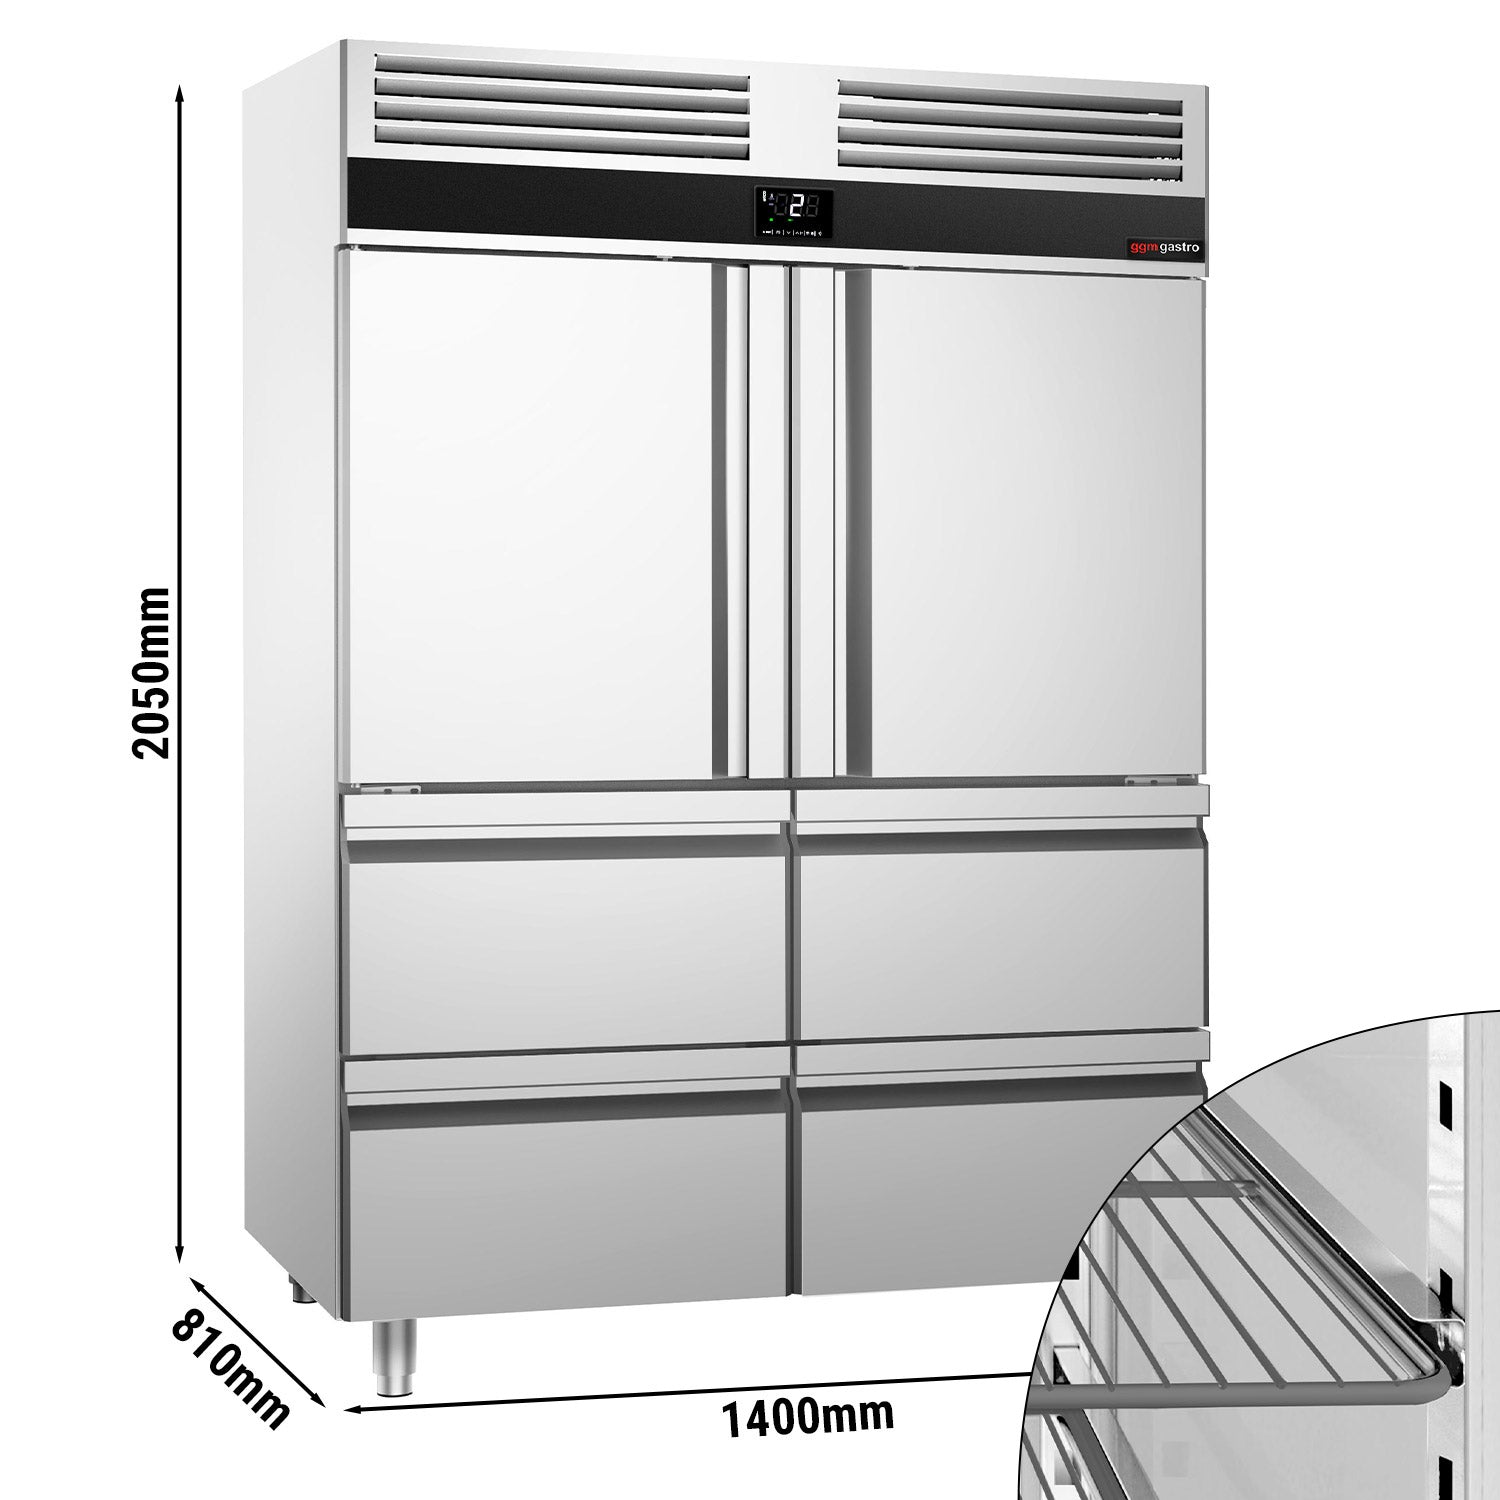 Køleskab - 1,4 x 0,81 m - med 2 halvdøre i rustfrit stål og 4 skuffer 1/2